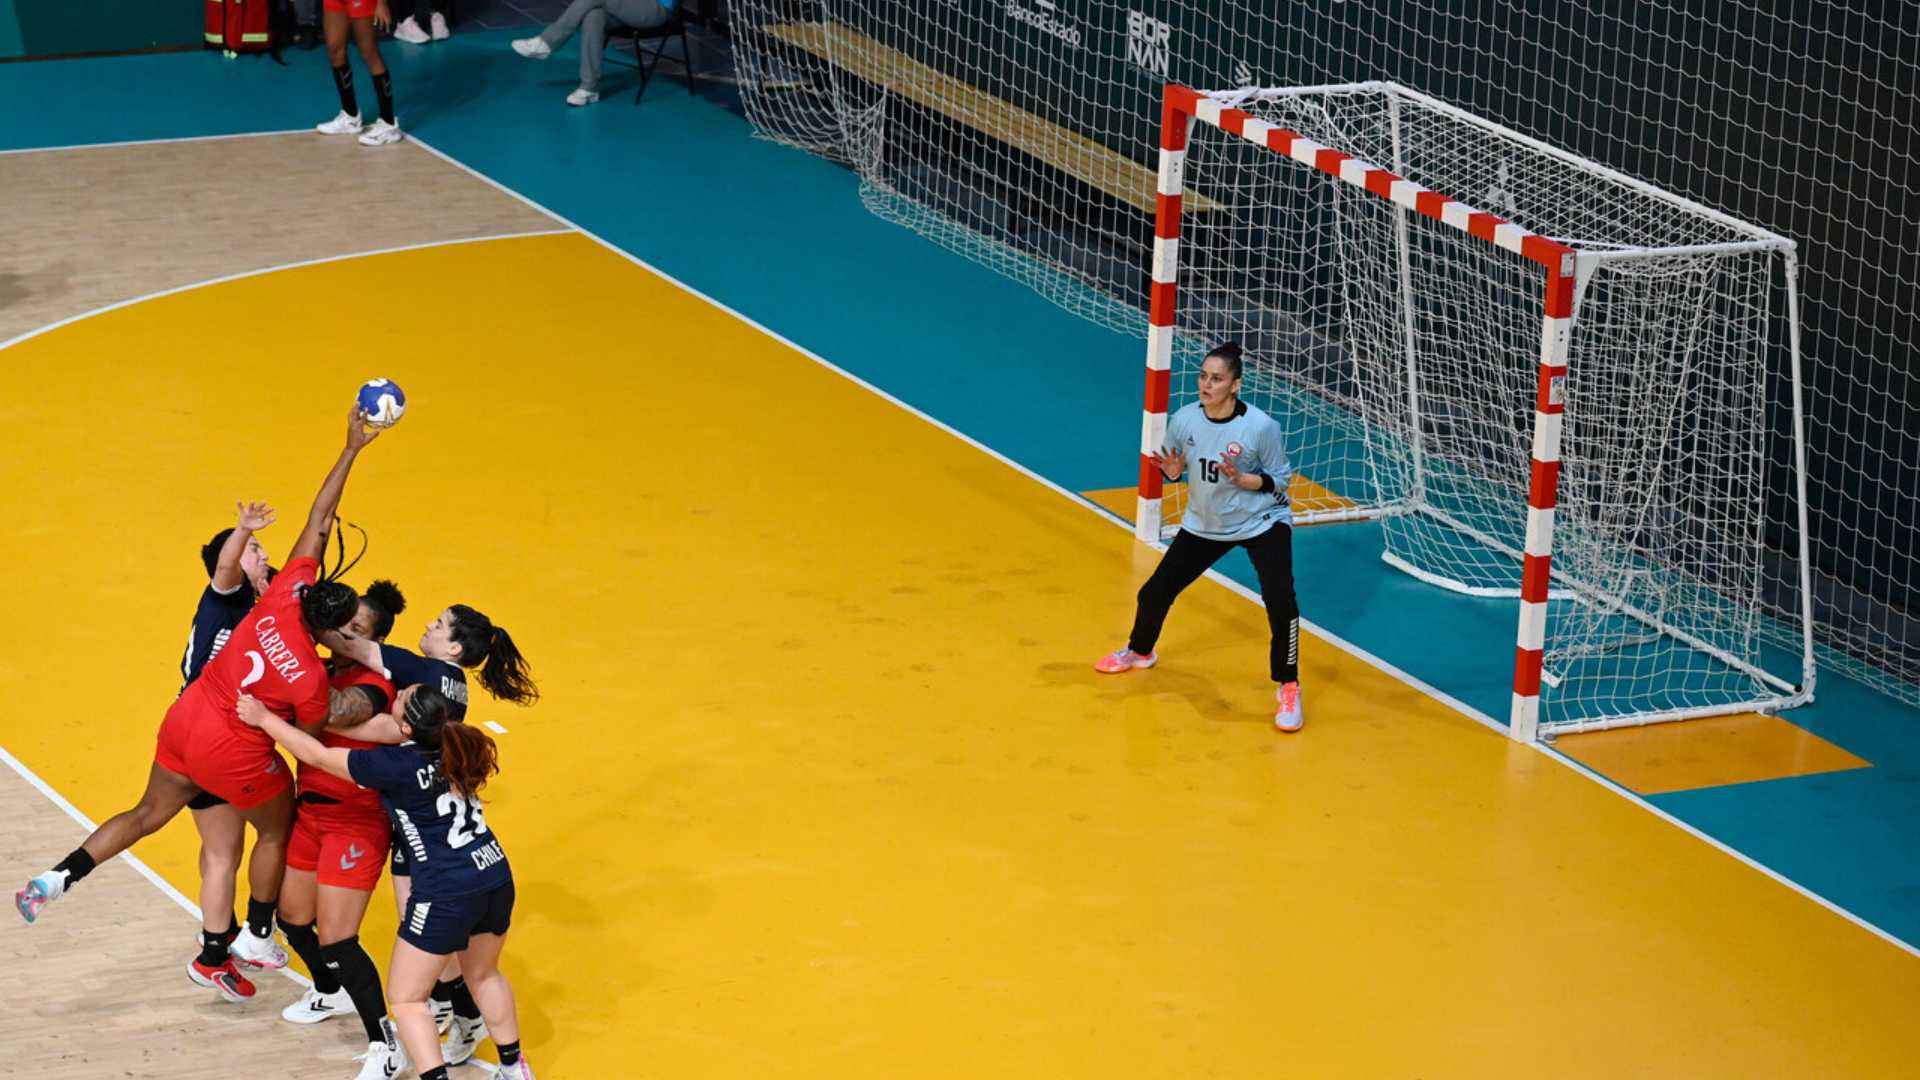 Chile's spectacular comeback to reach female’s handball semi-finals